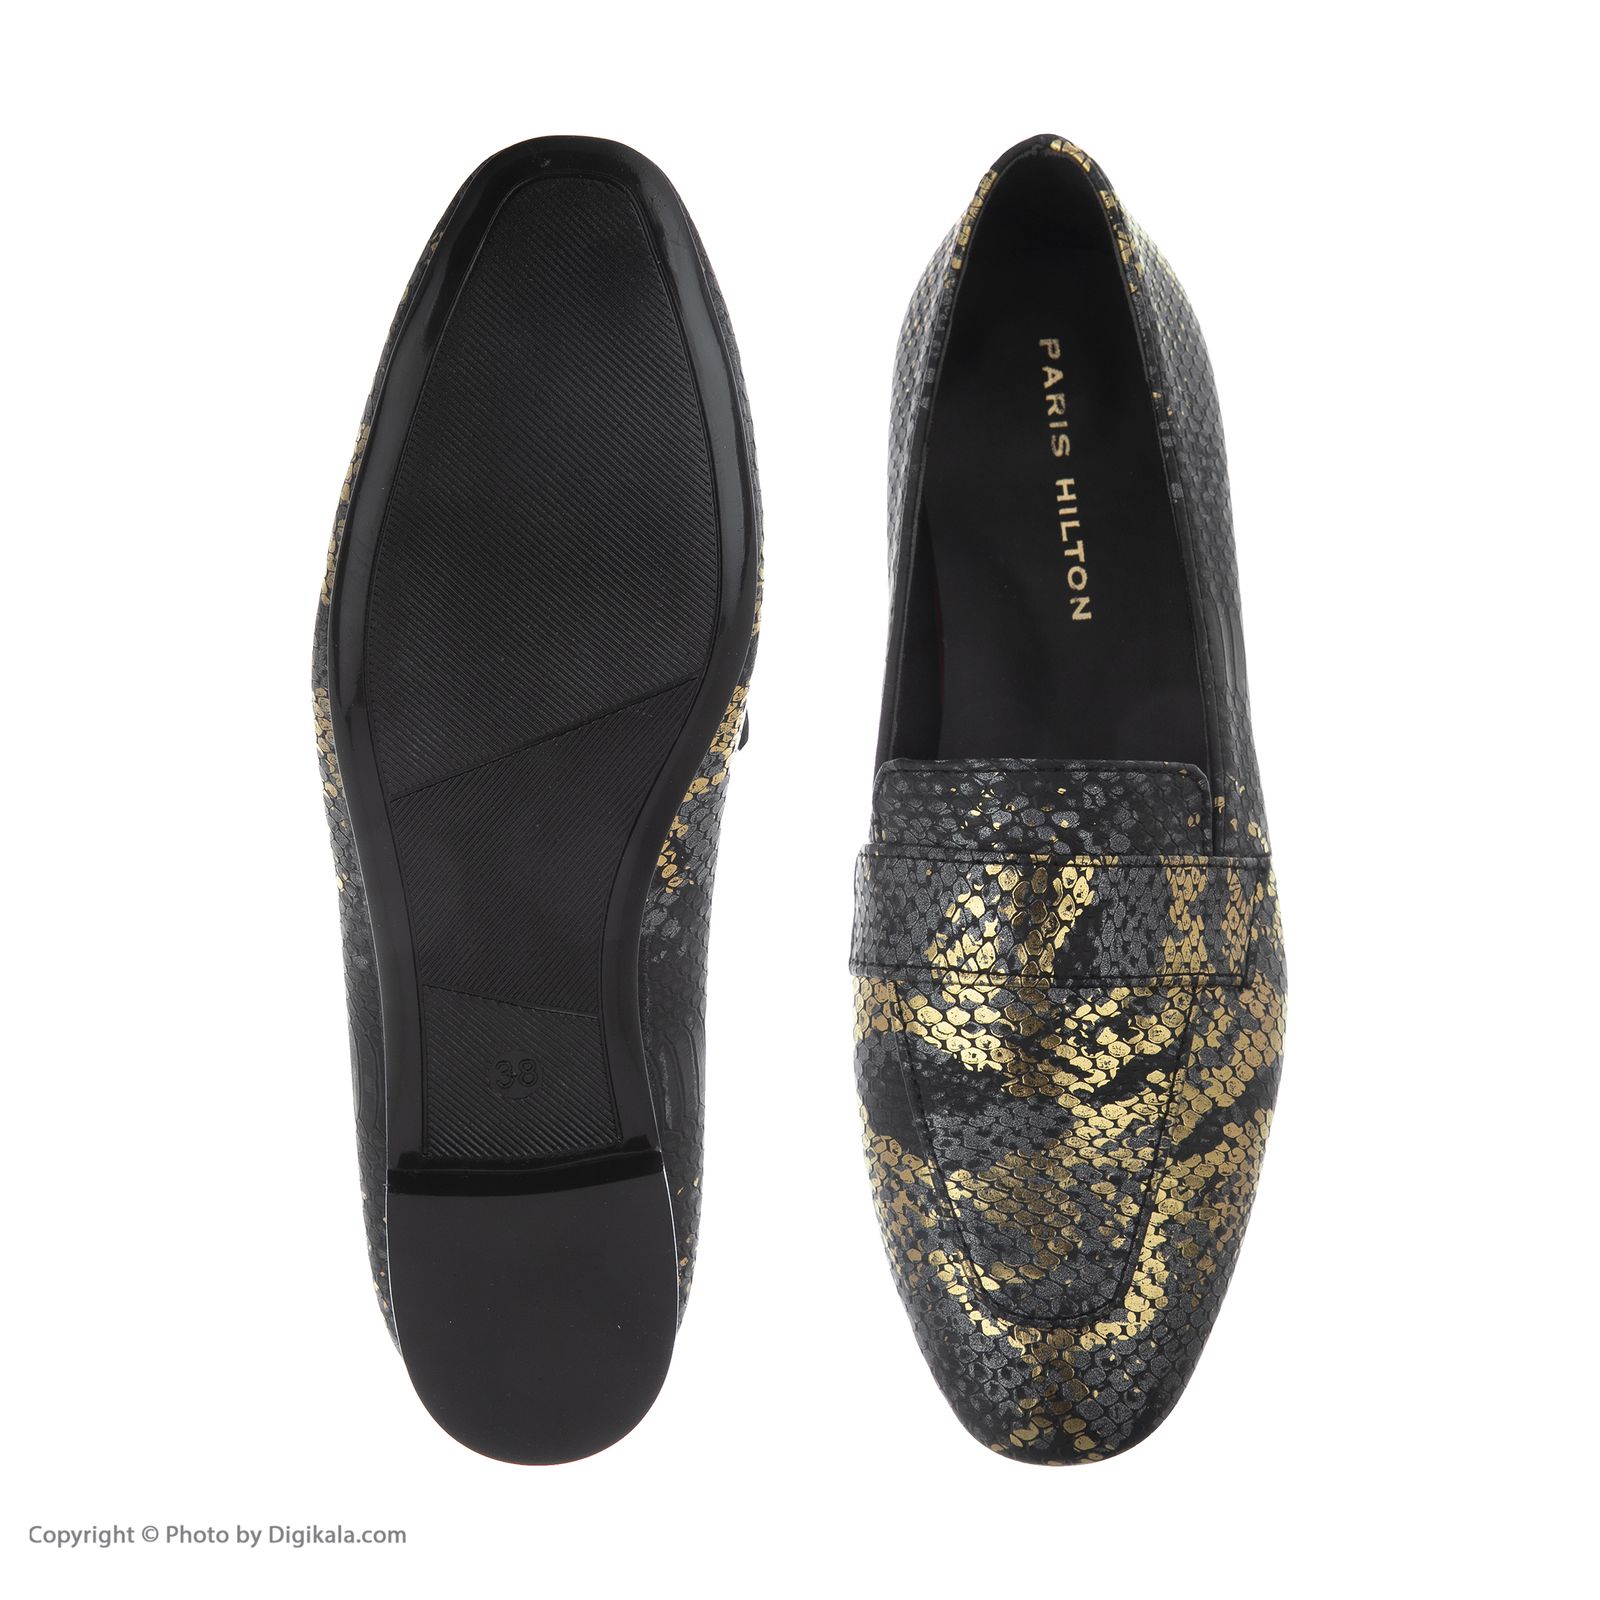 کفش زنانه پاریس هیلتون مدل پوست ماری psw21181 رنگ طلایی -  - 5